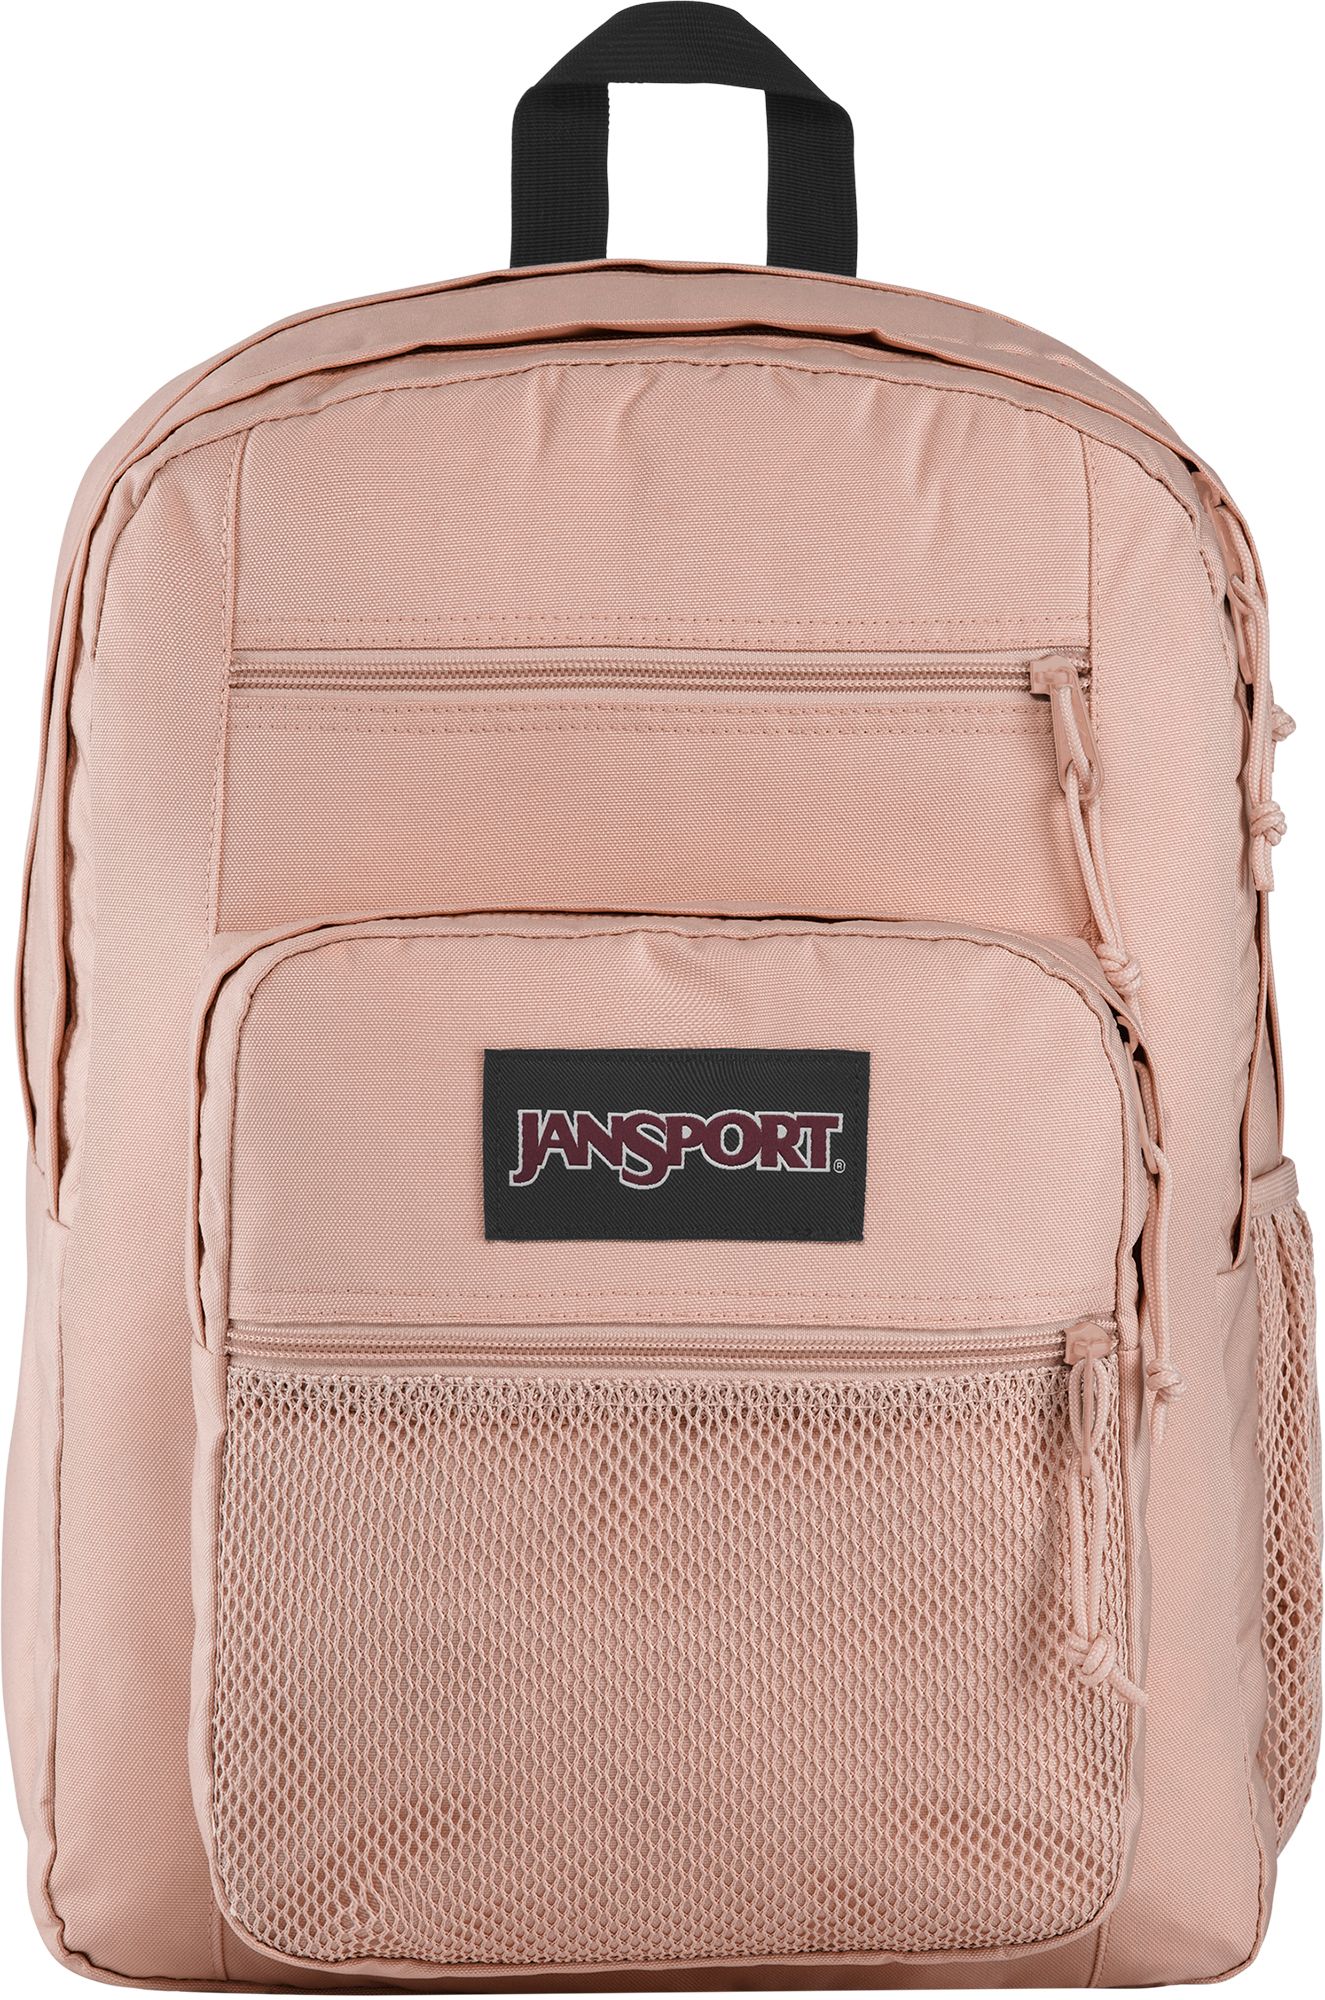 rose gold jansport backpack